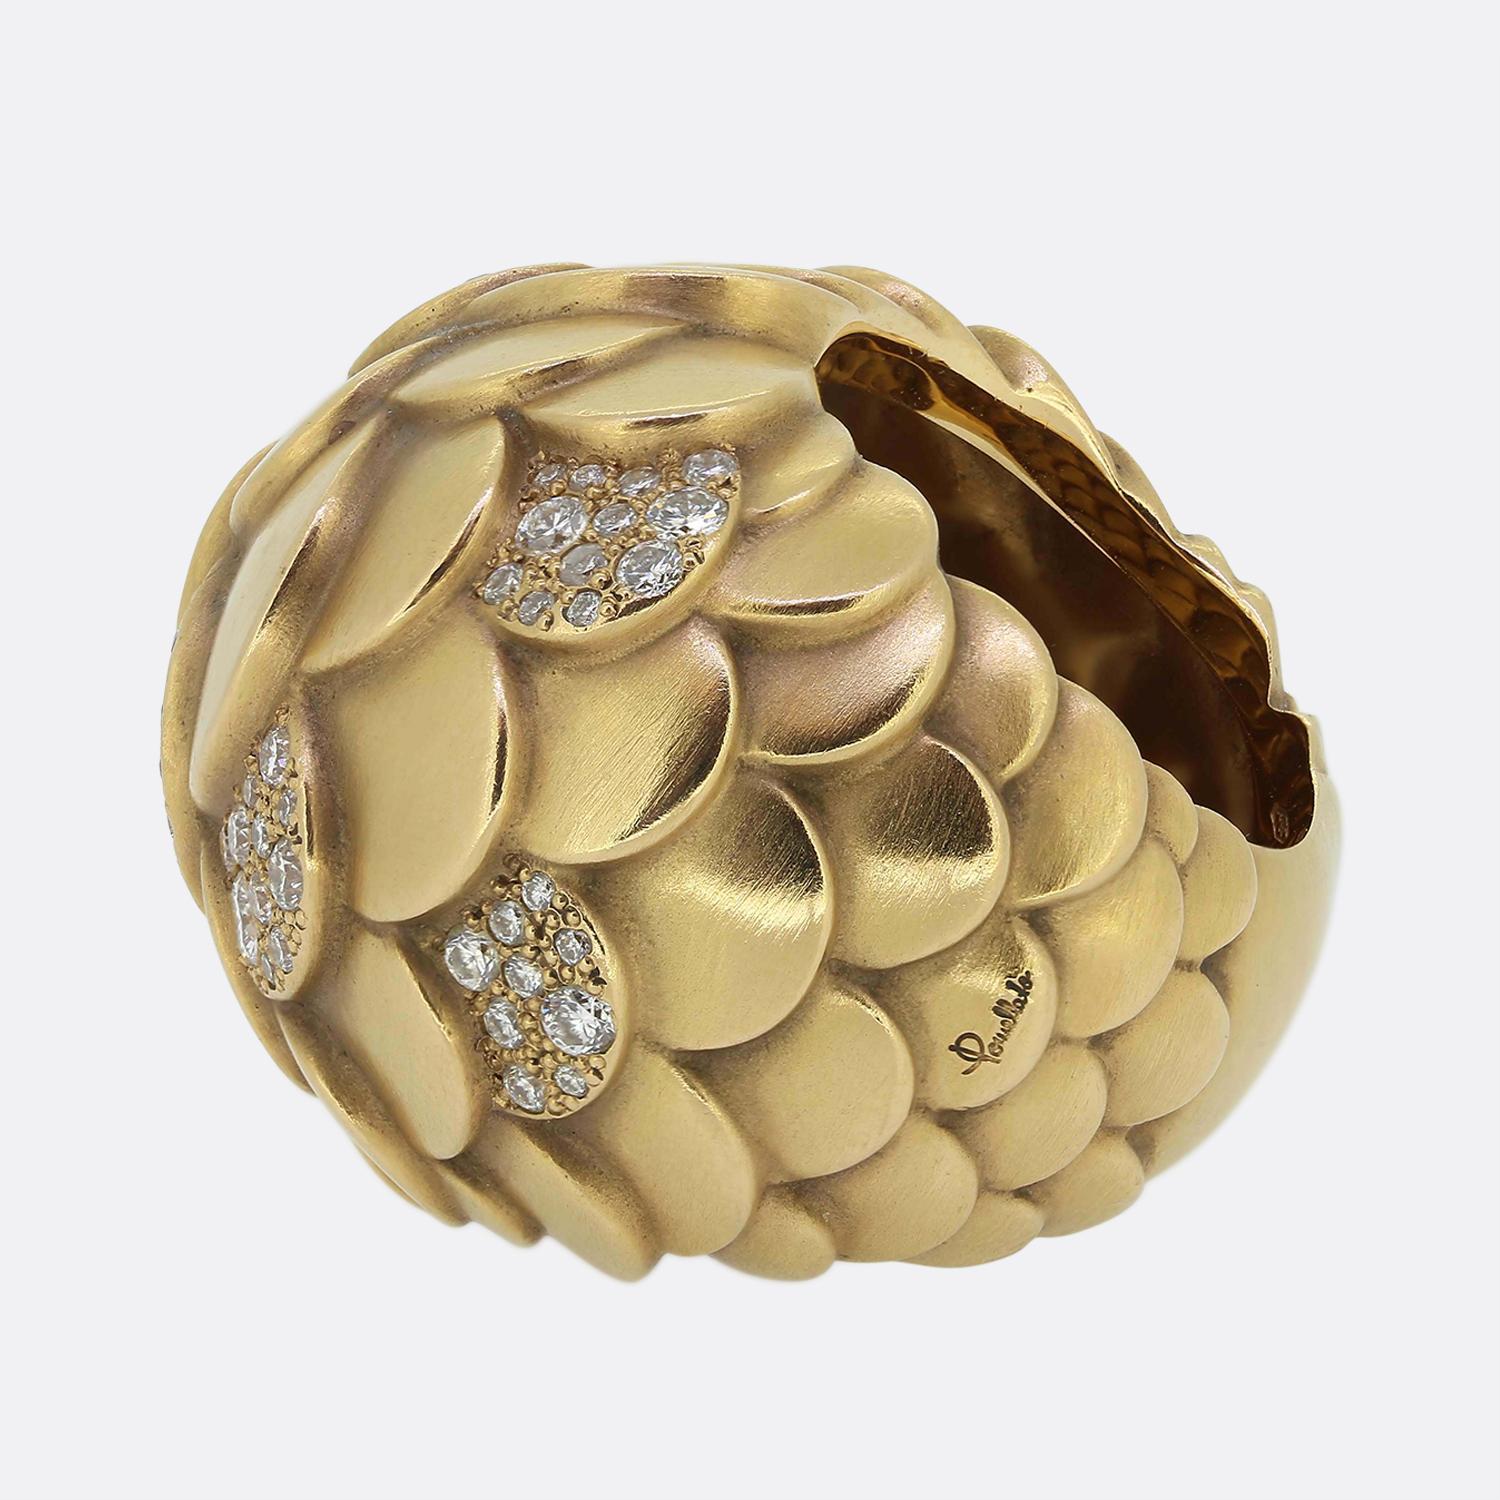 Se trata de un gran anillo de cóctel del diseñador de joyas de lujo Pomellato. El anillo forma parte de la colección Sirène y se inspira en las criaturas del mar. Esta sustanciosa pieza ha sido elaborada en oro rosa de 18 ct en estilo bombe con un